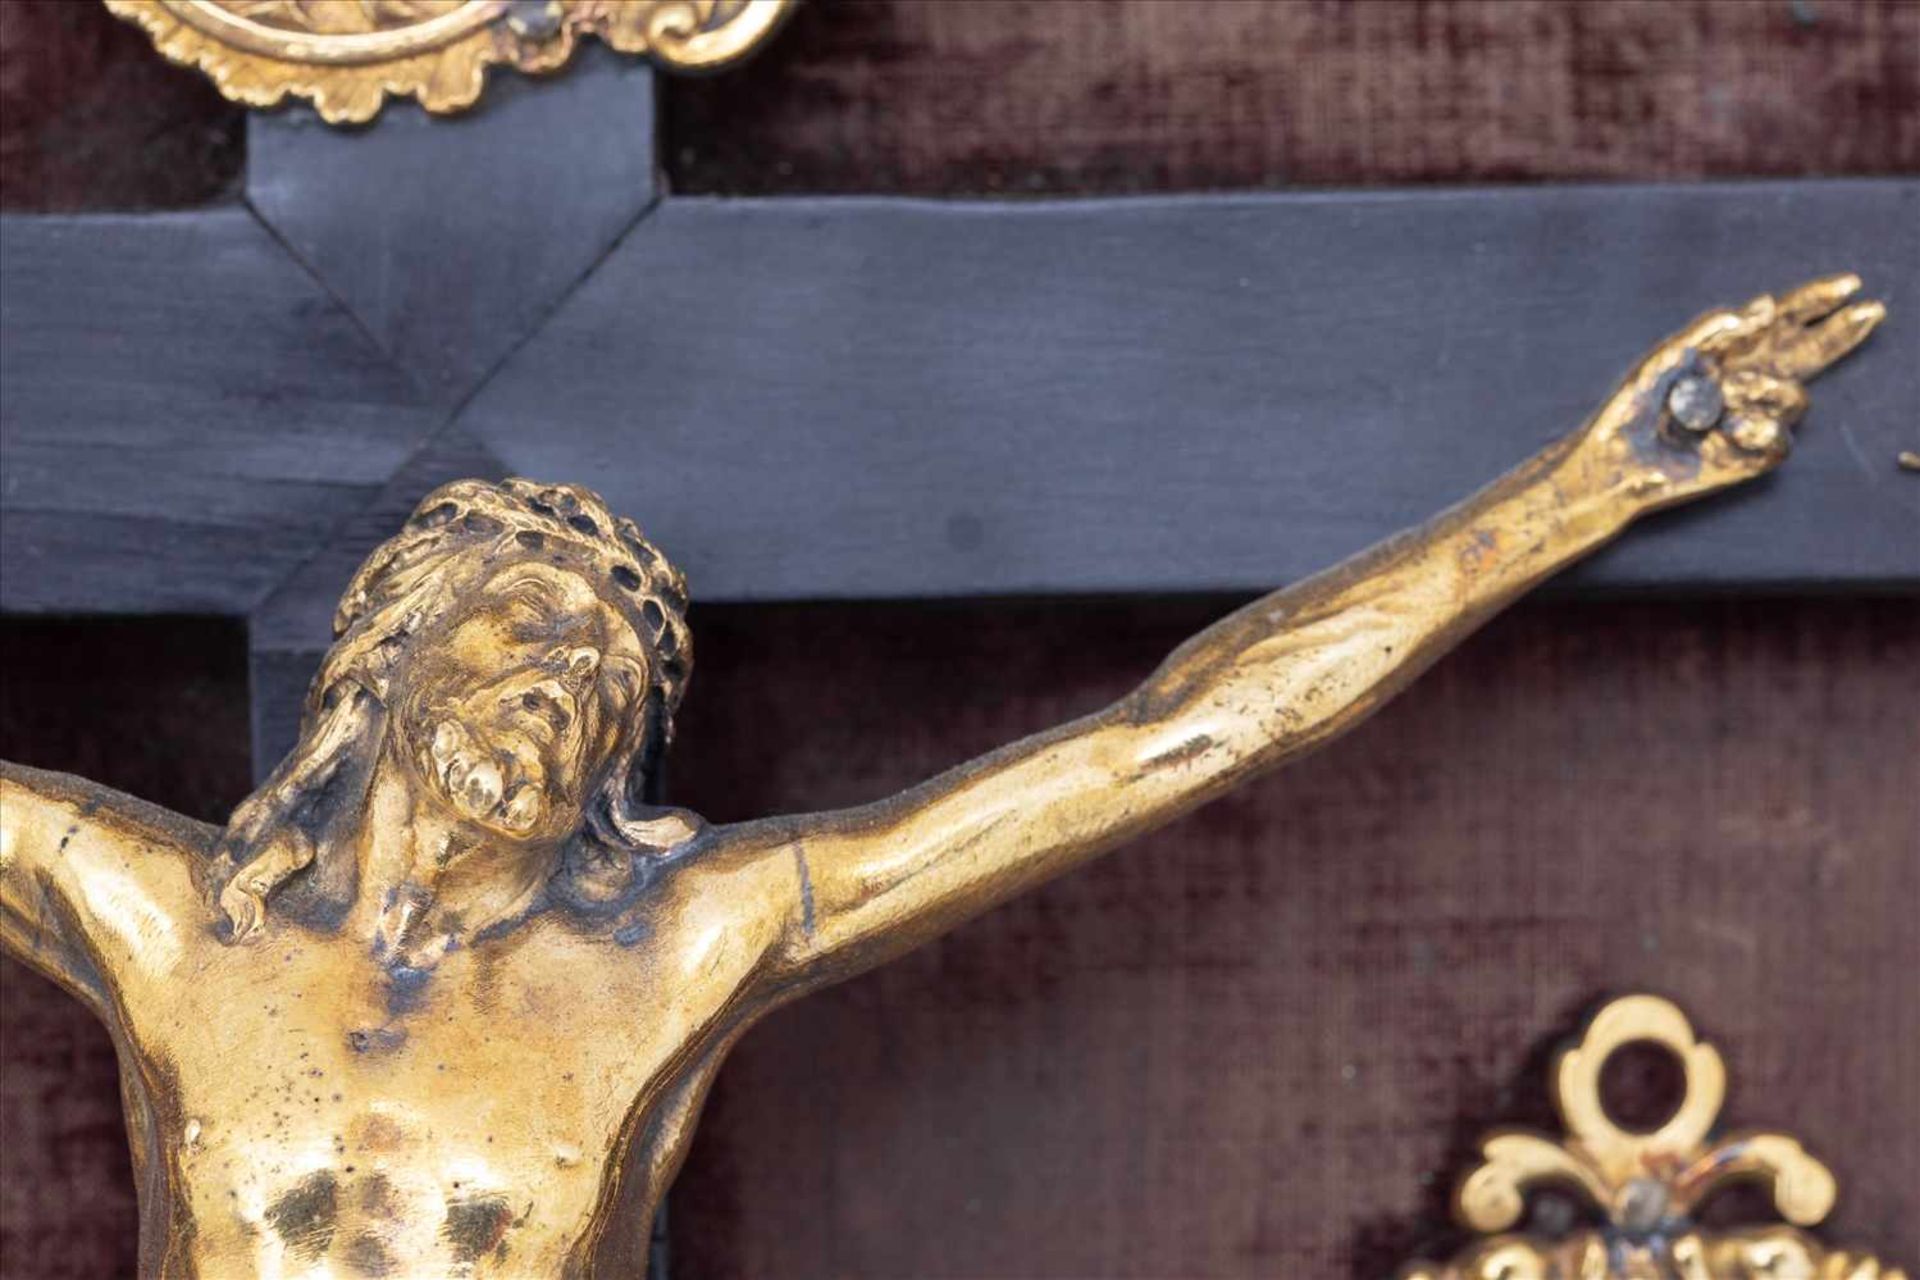 Barocker Hausaltar, Italien 17. Jh.Darstellung der Kreuzigung und Passion Christi, Bronze vergoldet, - Bild 11 aus 13